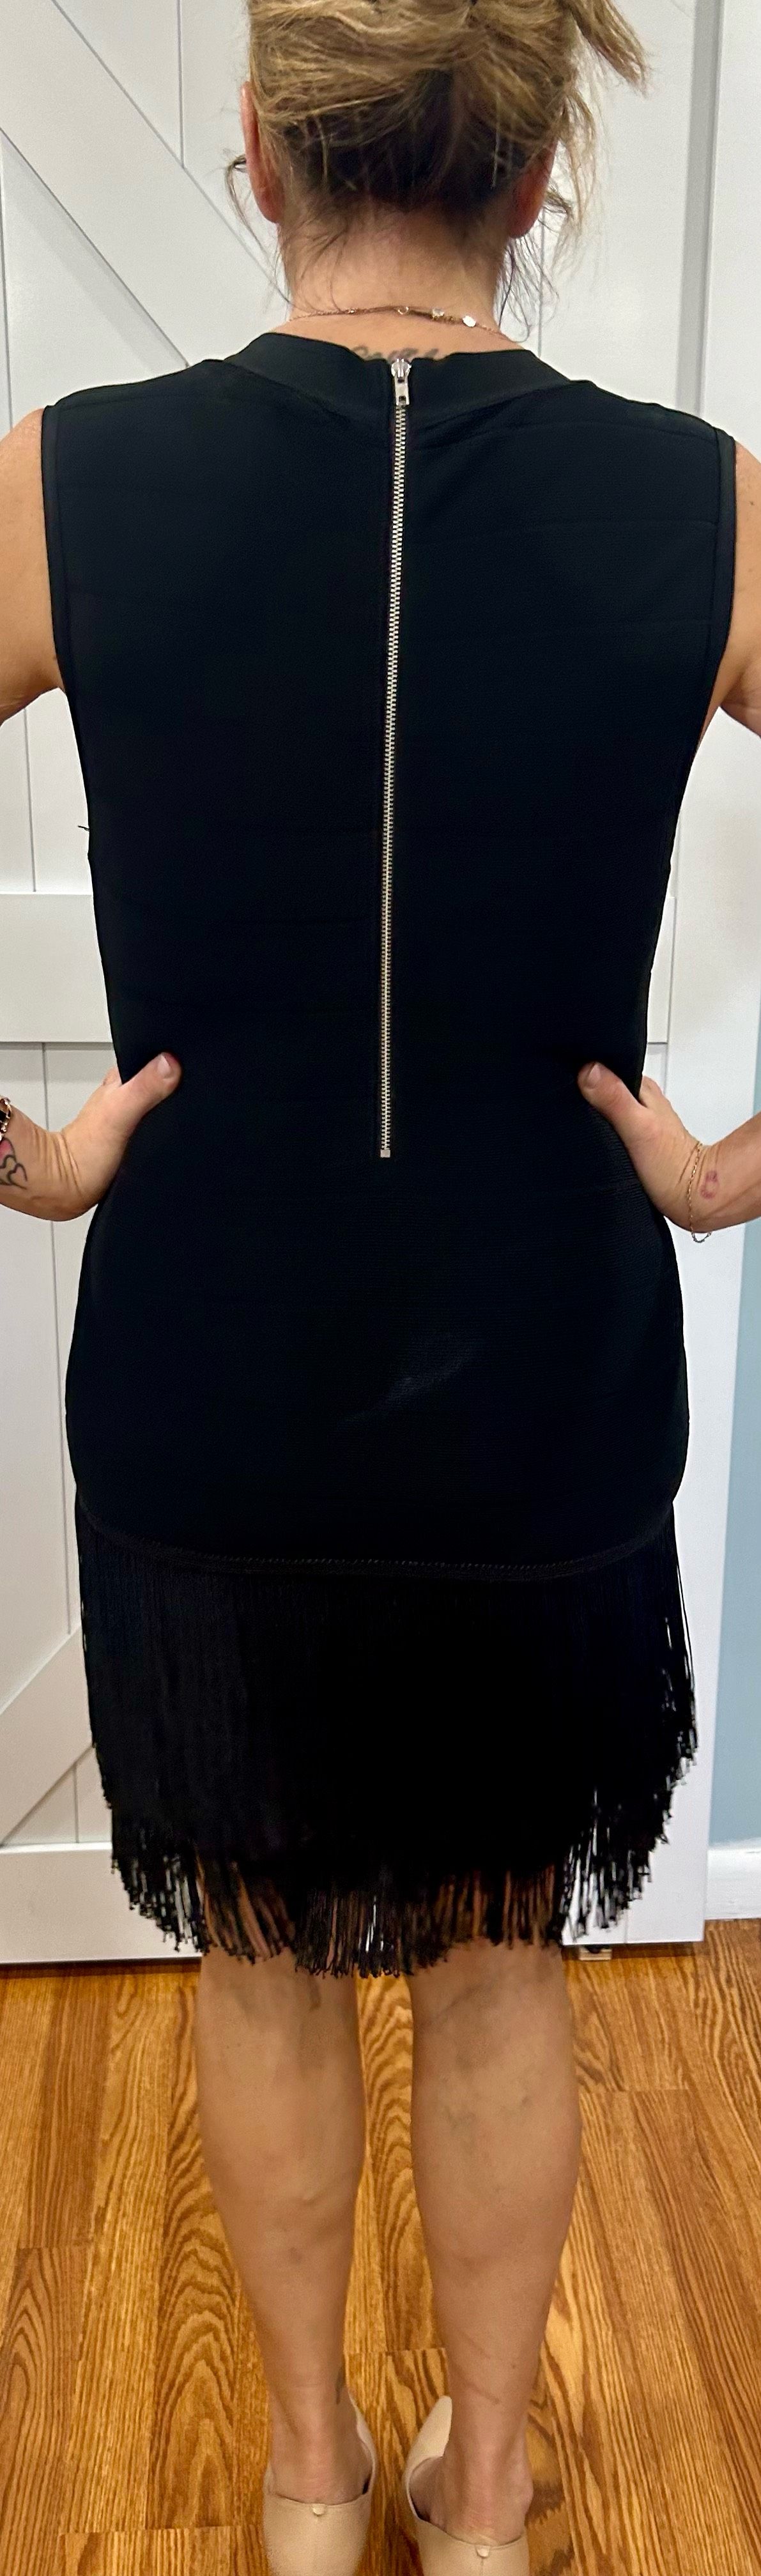 Venus Size 12 Nightclub Plunge Black Cocktail Dress on Queenly